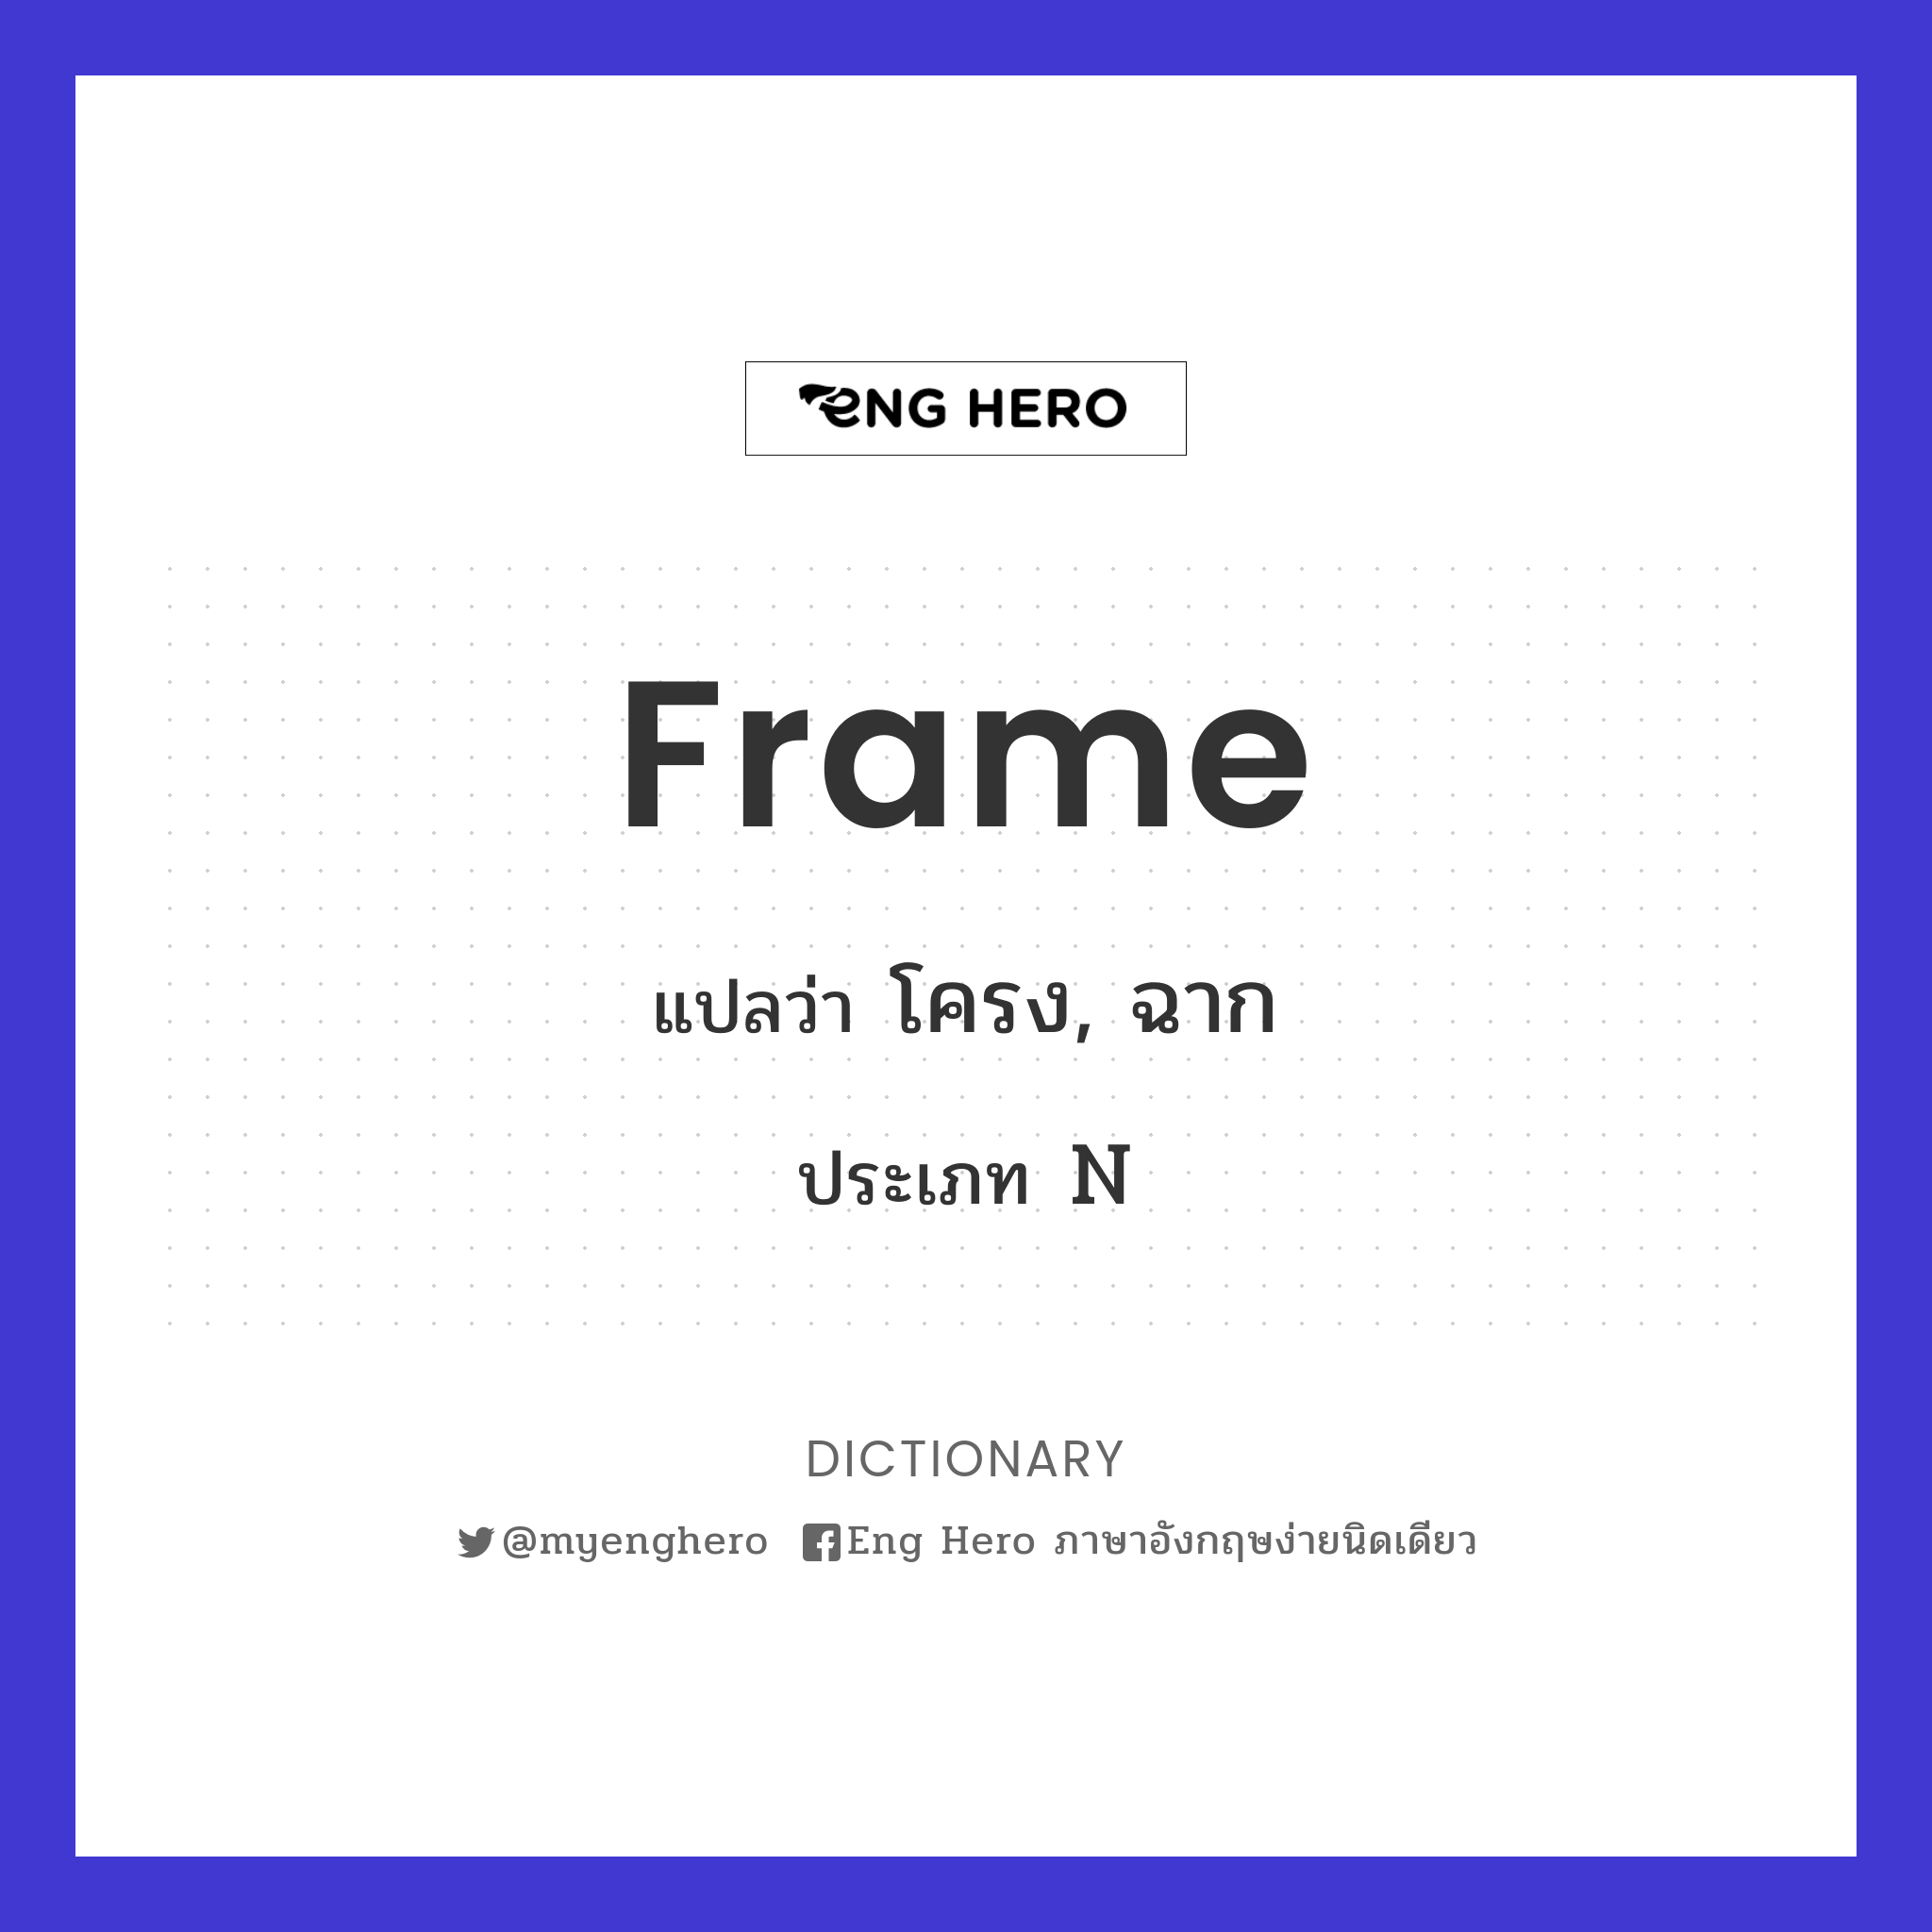 frame